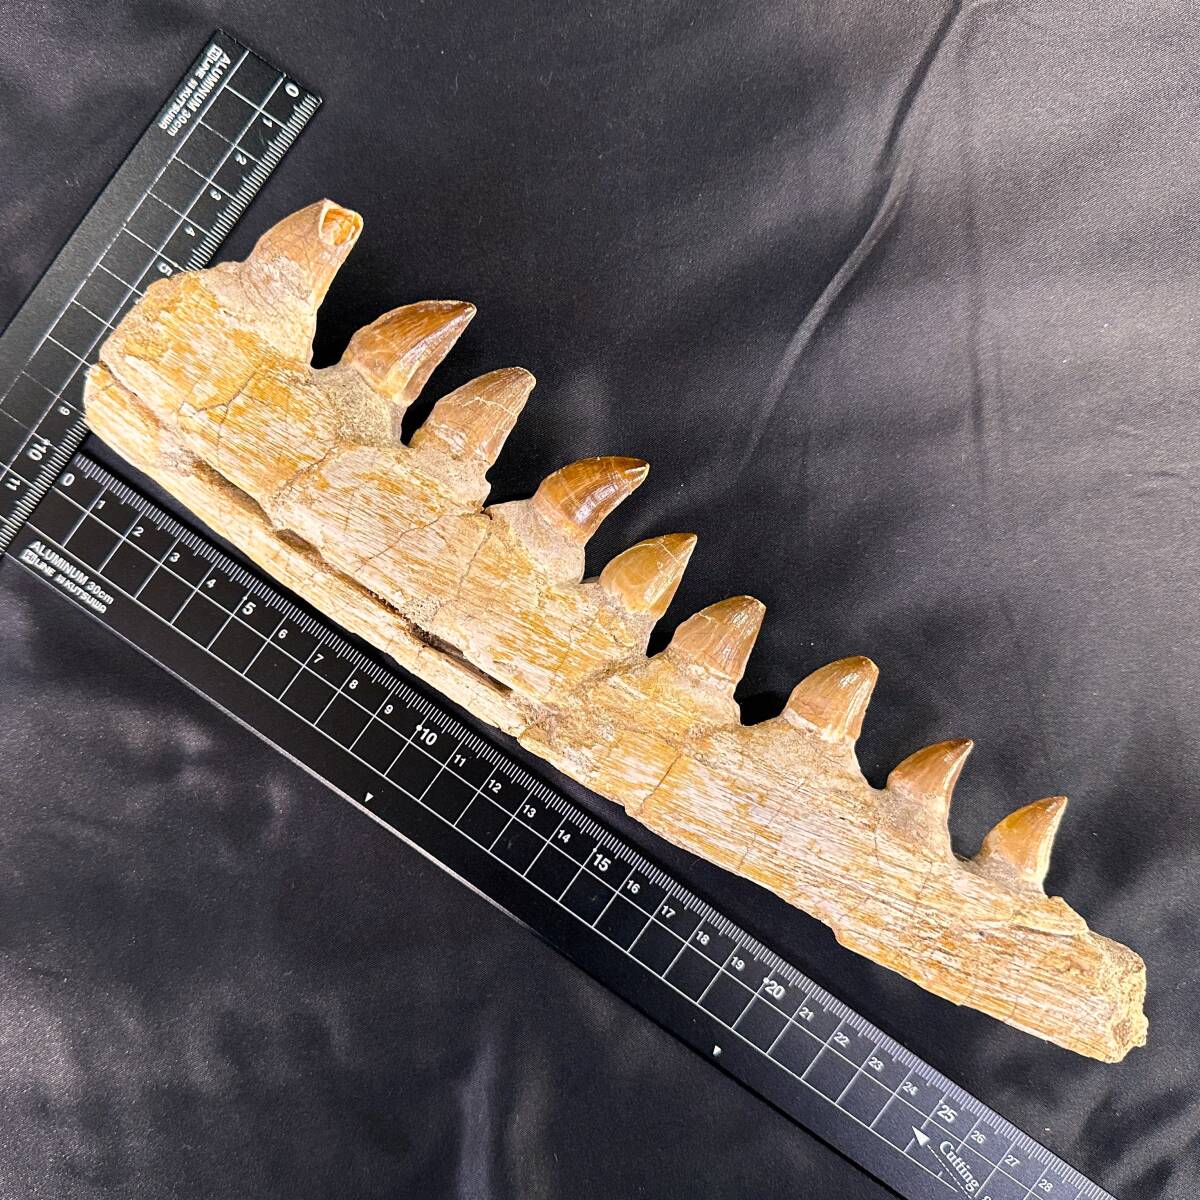 ◆モササウルス 顎骨 化石◆モロッコ/歯列 牙 恐竜/母岩なし 生え変わりの歯 日本では入手不可/スピノサウルス ティラノサウルス好きに/949_画像9